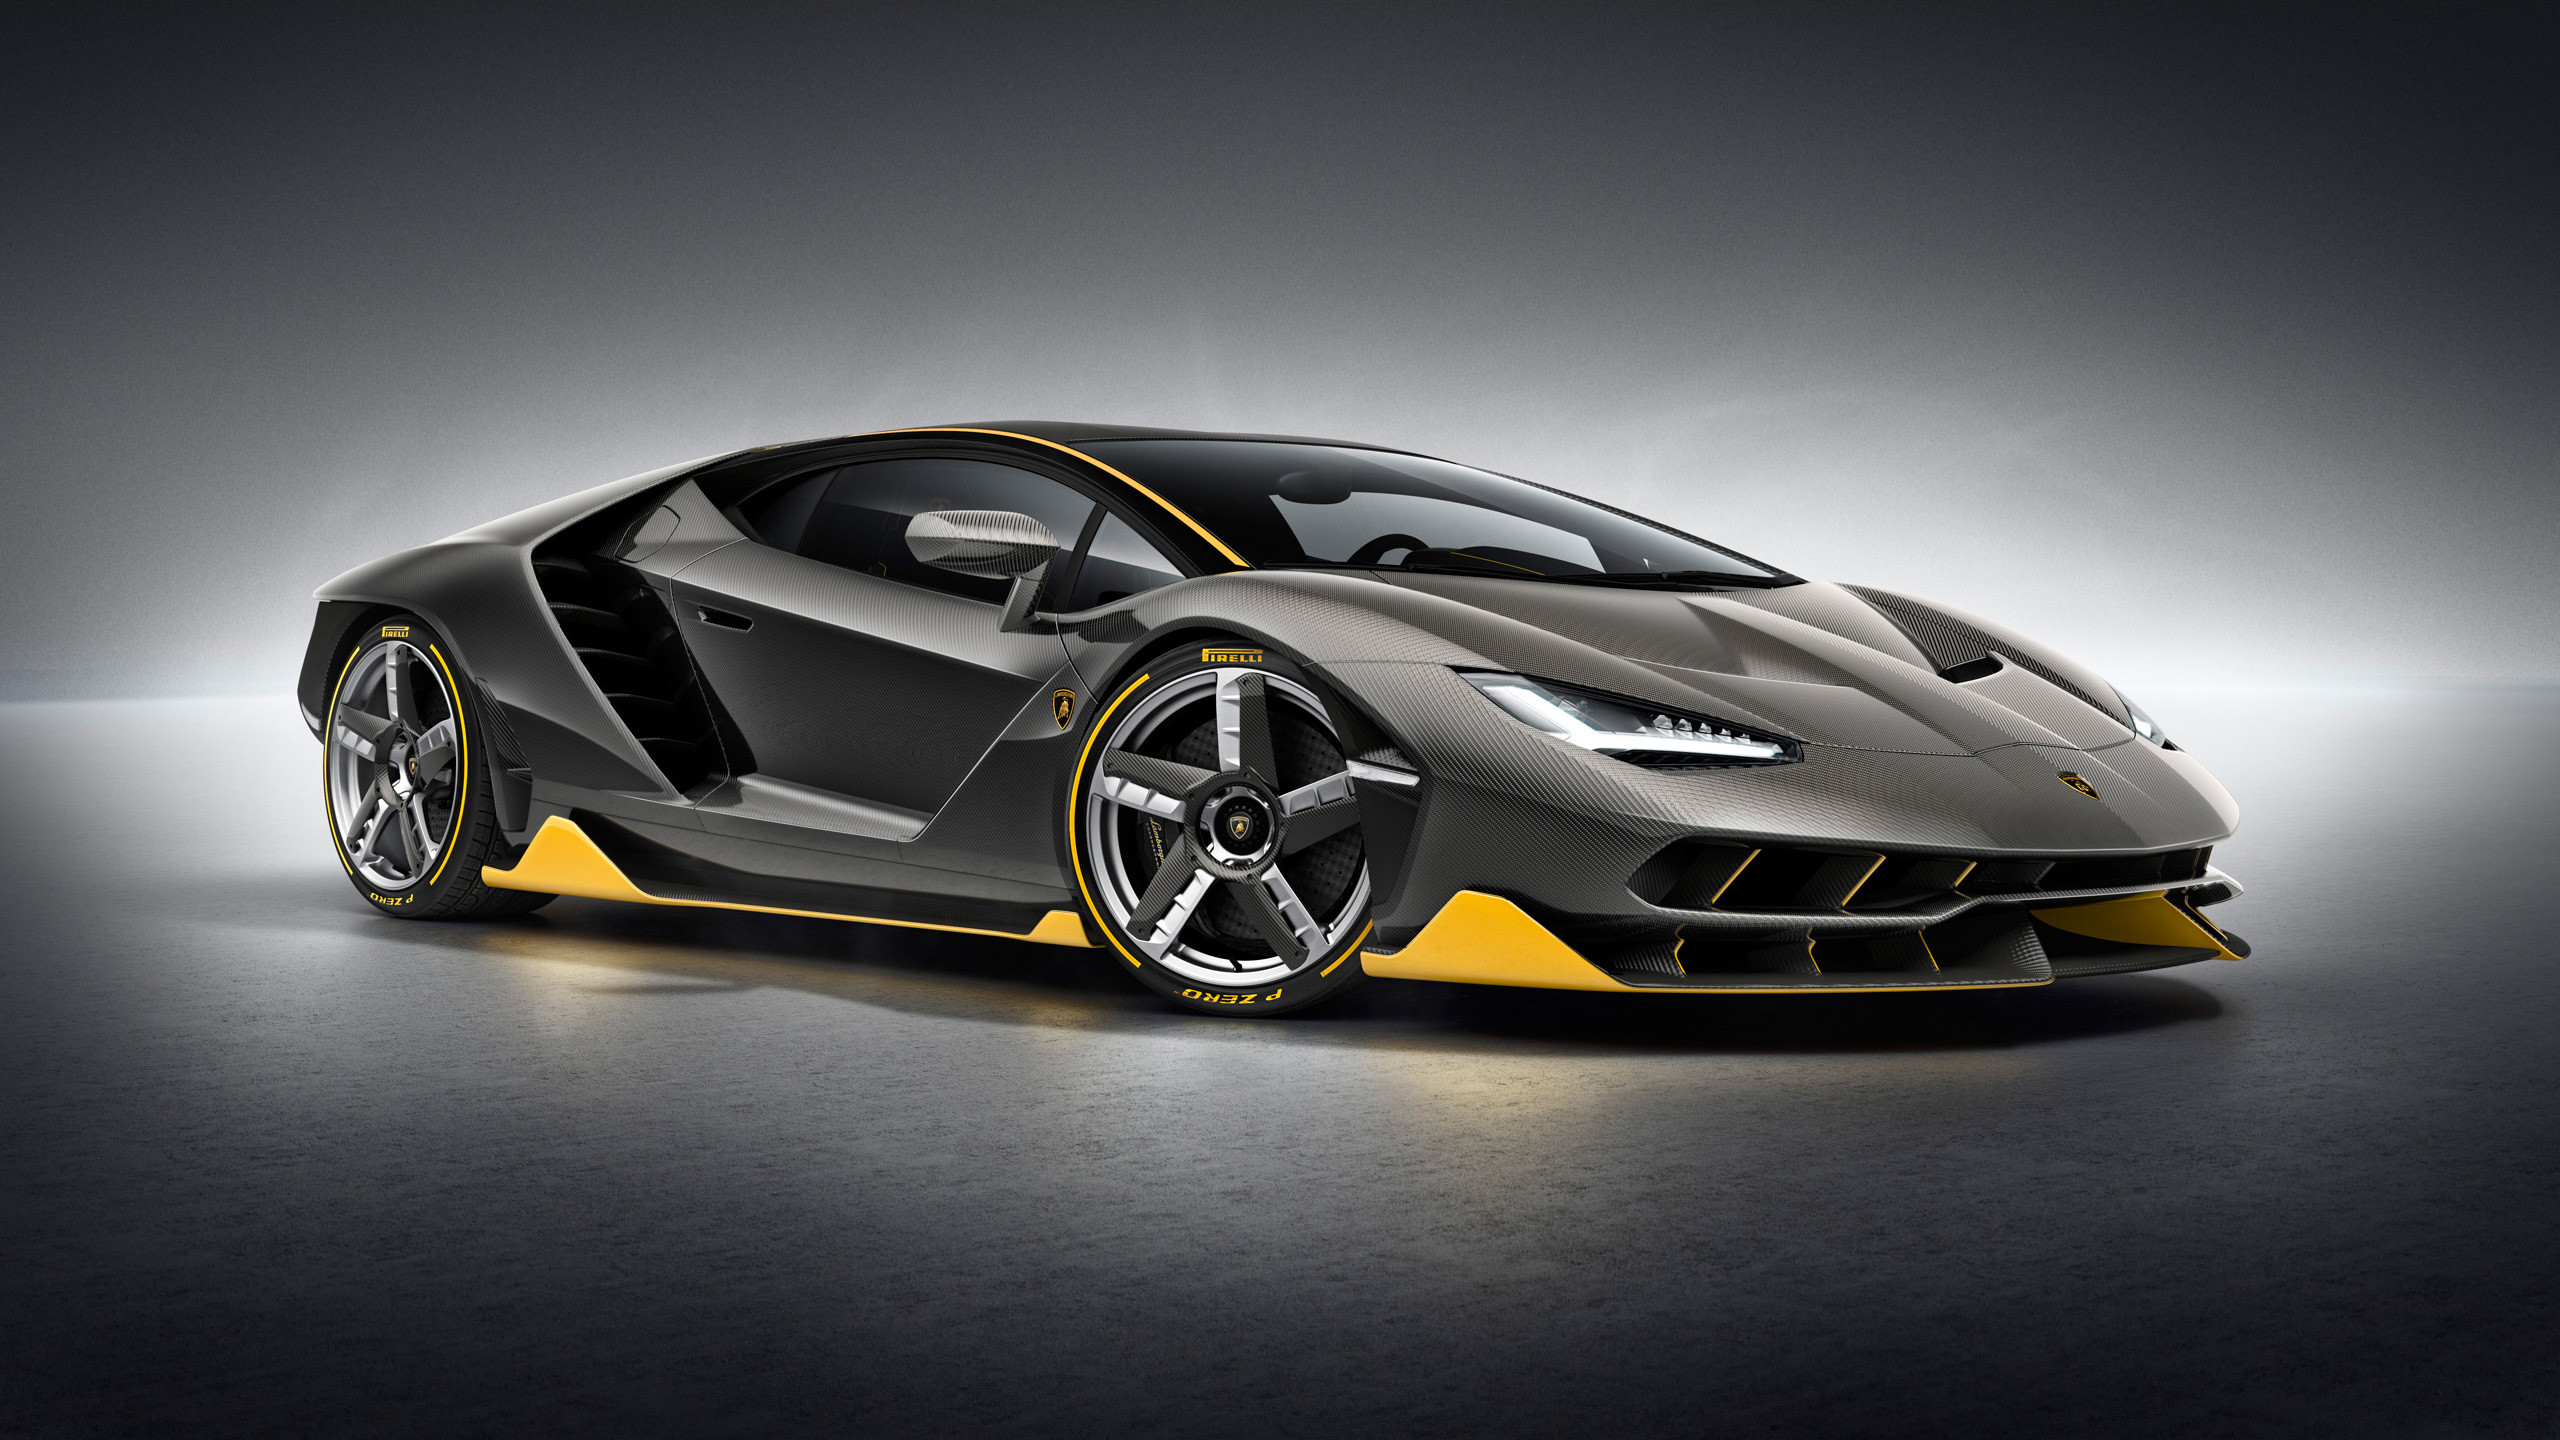 2560x1440 Lamborghini Gallardo Wallpaper HD